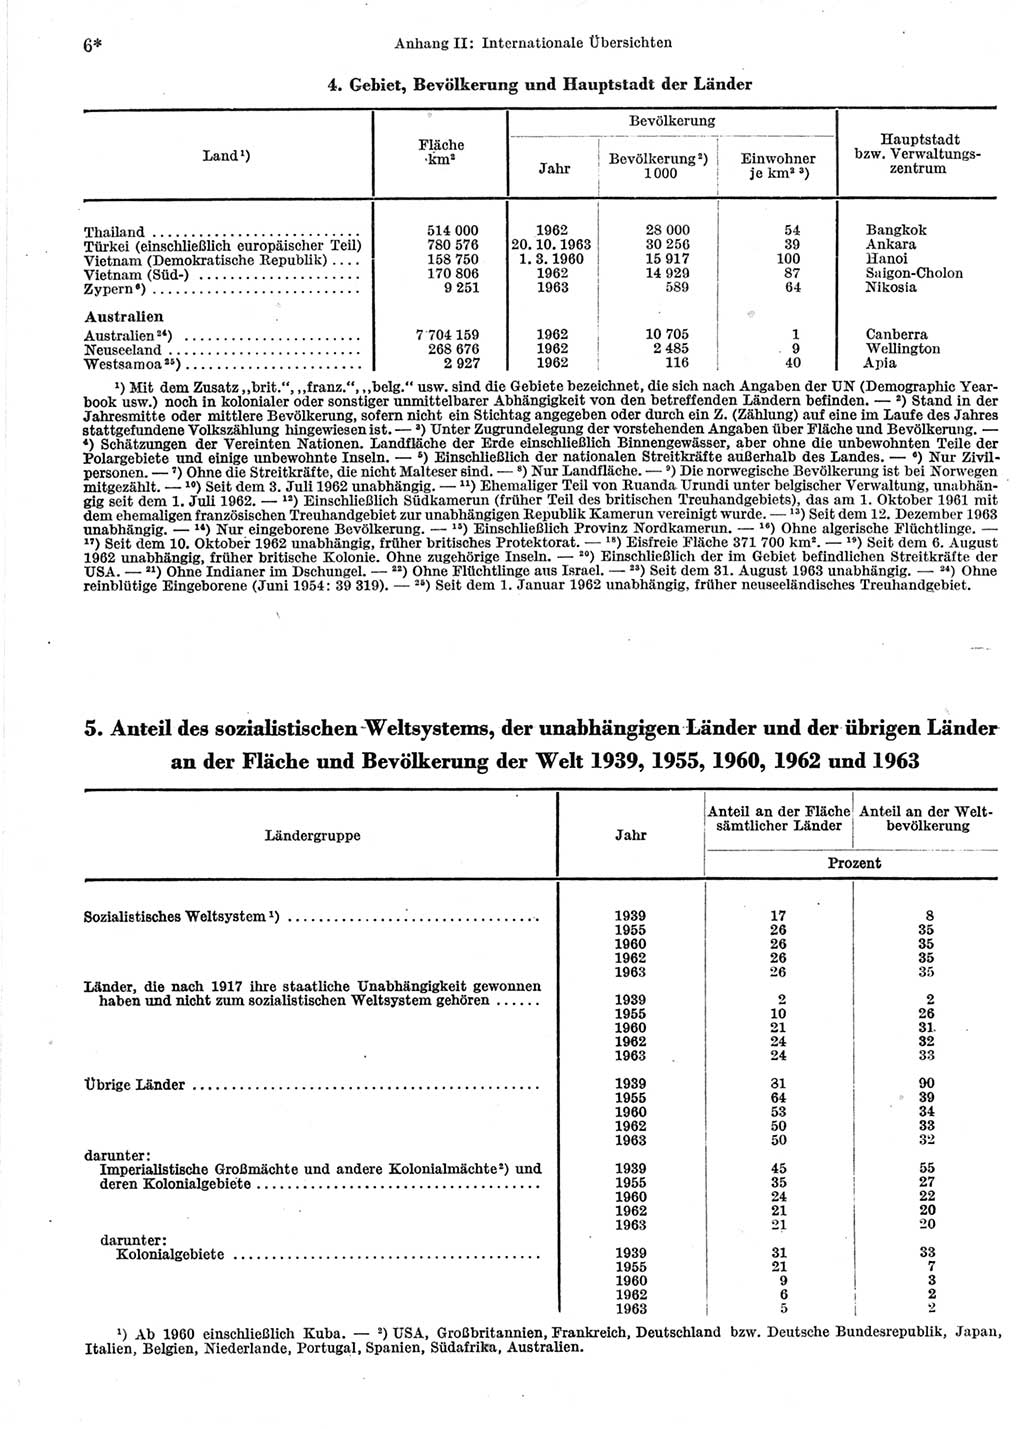 Statistisches Jahrbuch der Deutschen Demokratischen Republik (DDR) 1964, Seite 6 (Stat. Jb. DDR 1964, S. 6)